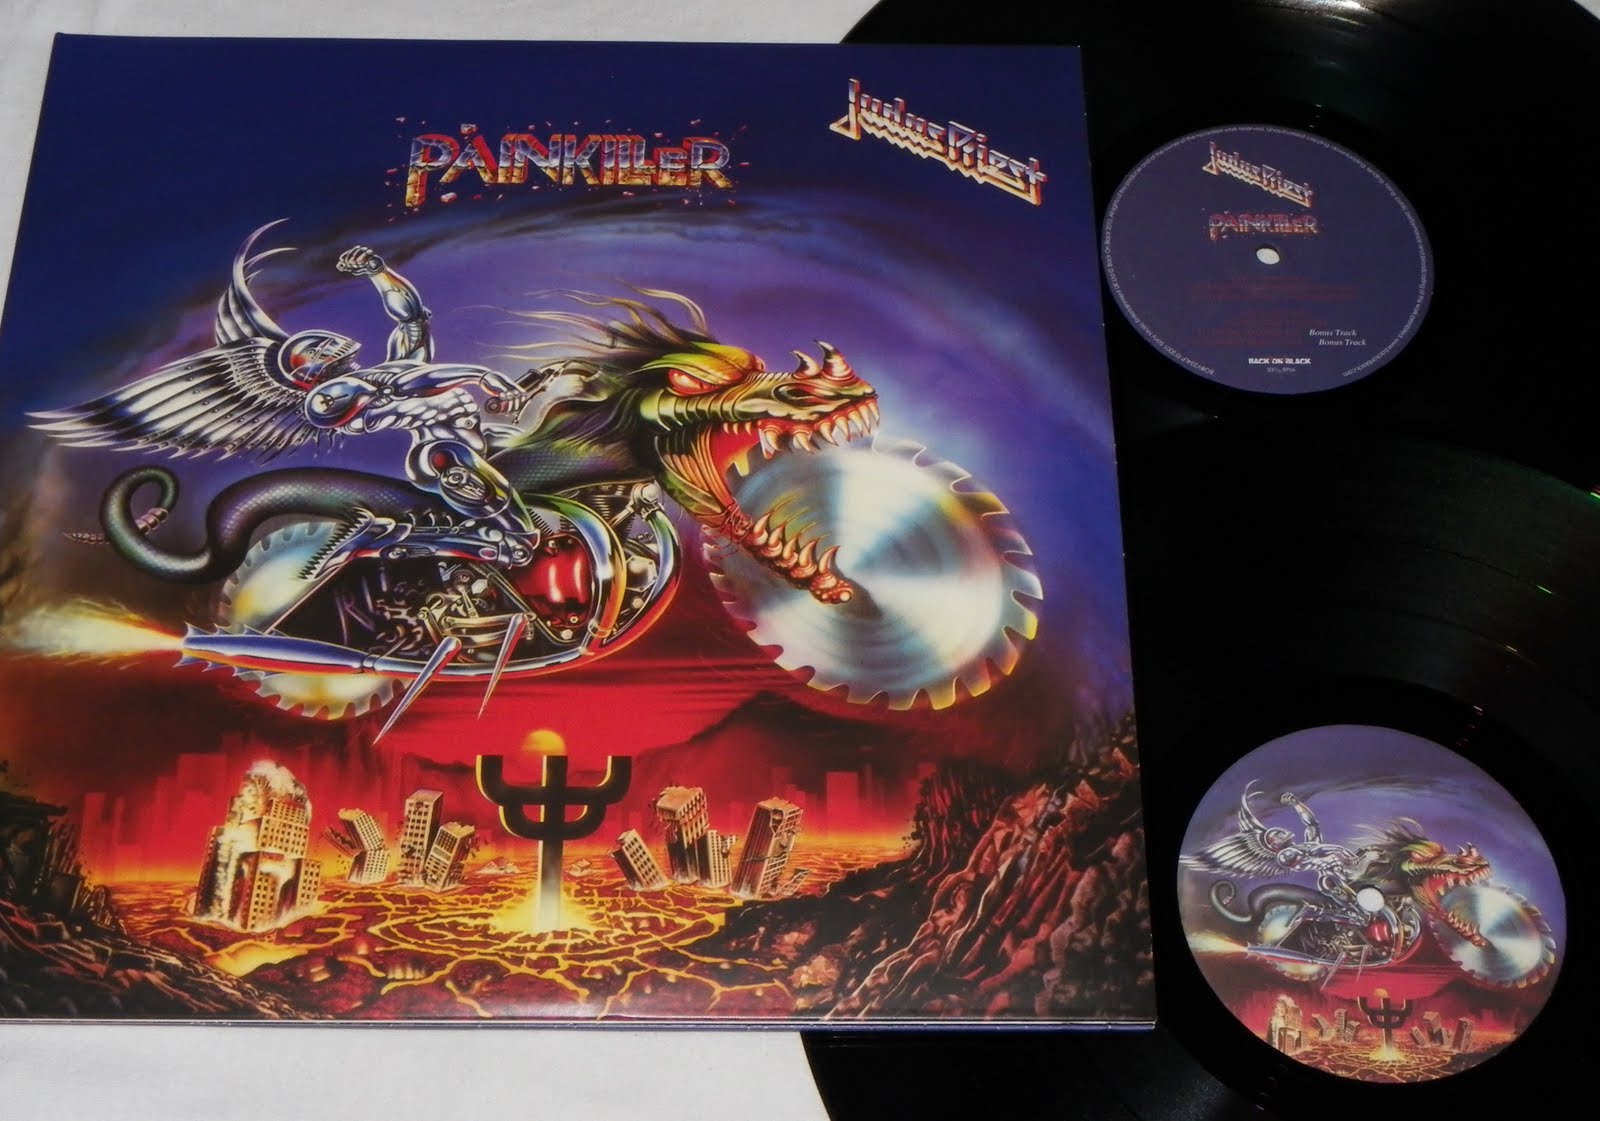 Группа judas priest альбомы. Judas Priest Painkiller 1990. Judas Priest Painkiller обложка. Judas Priest Painkiller 1990 Tour. Judas Priest 1990 Painkiller обложка альбома.